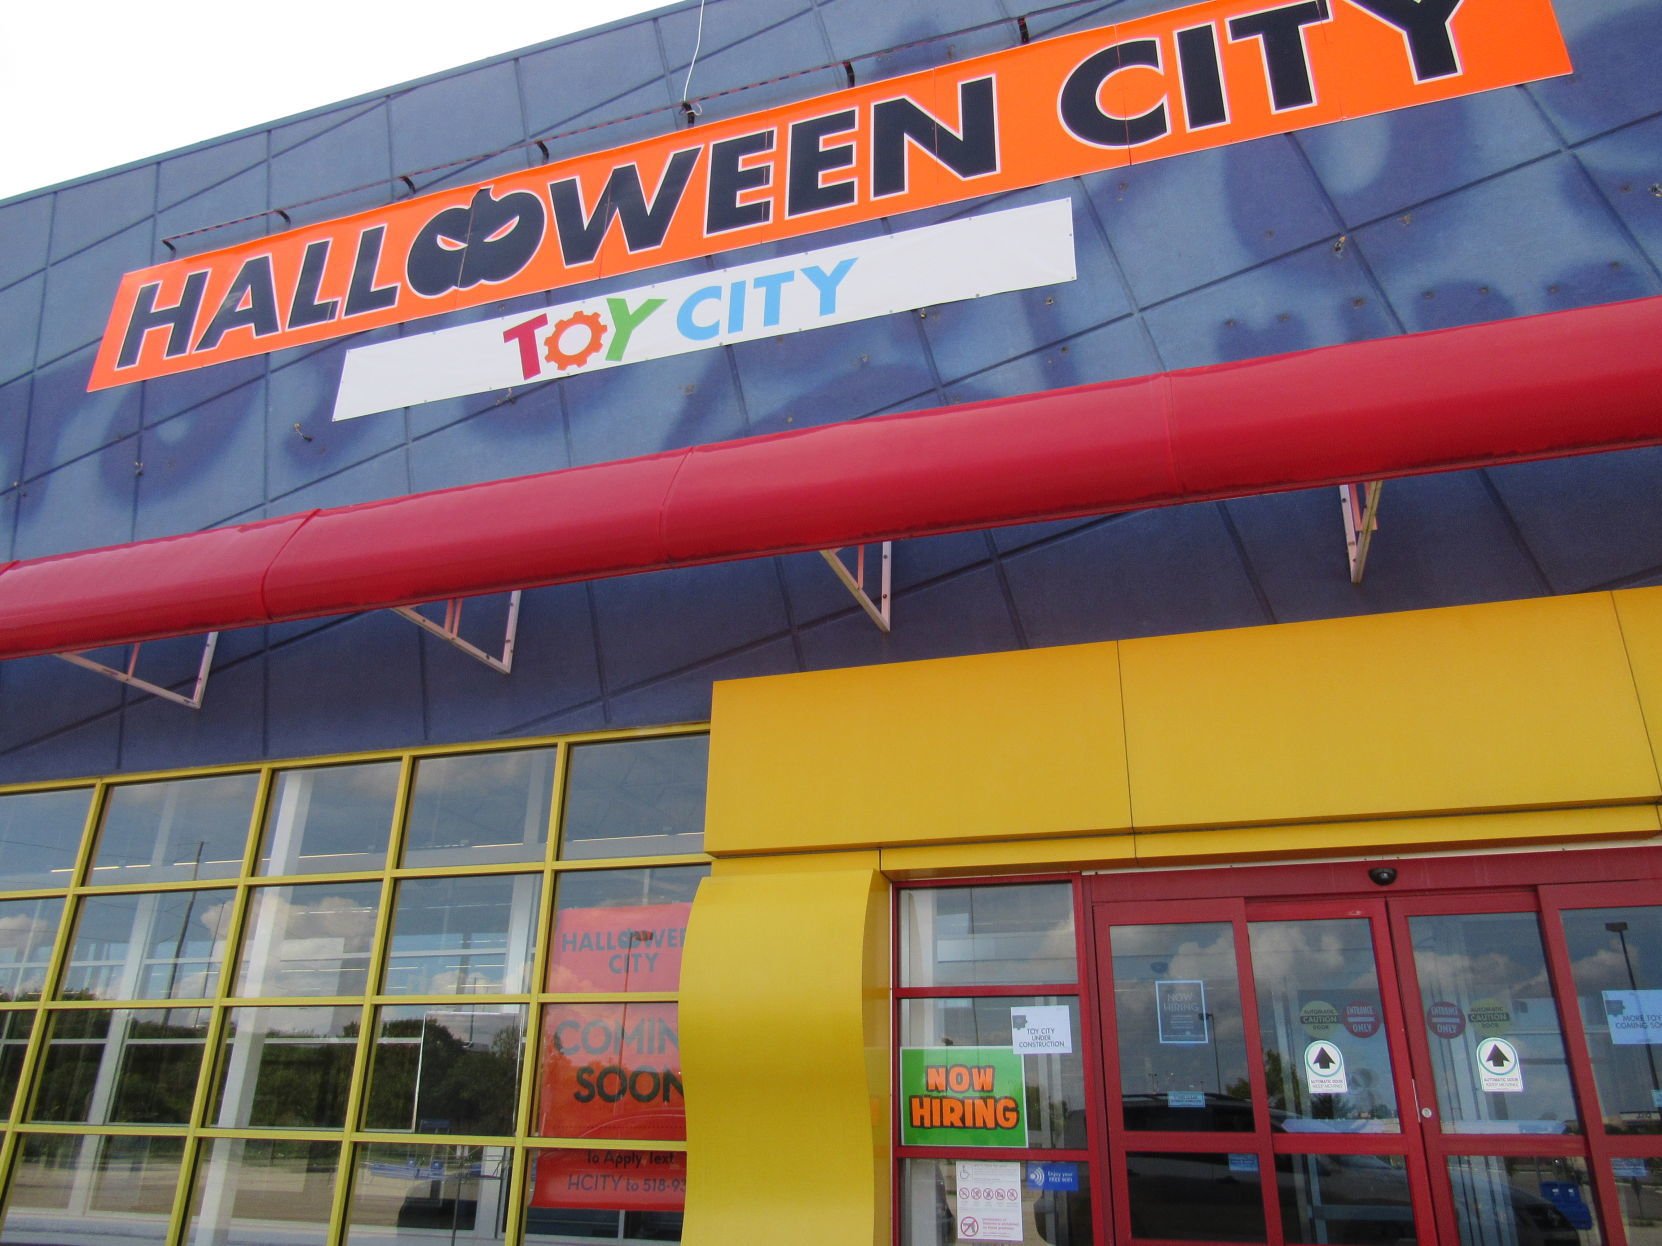 toy city halloween city